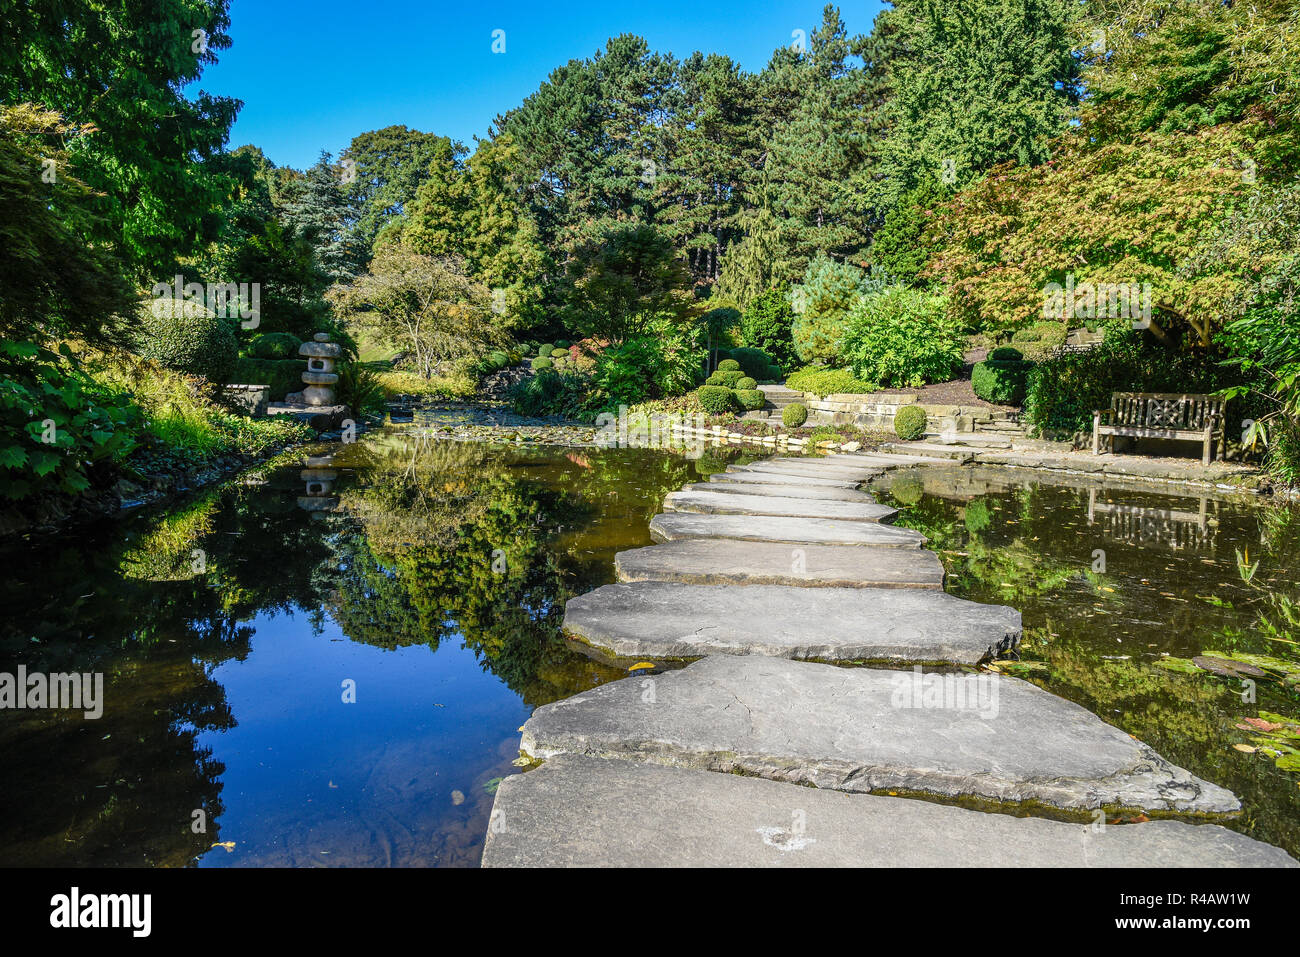 Jardín japonés, estanque, parque público, municipal, de Westfalenpark, Dortmund, districto de Ruhr, Renania del Norte-Westfalia, Alemania Foto de stock